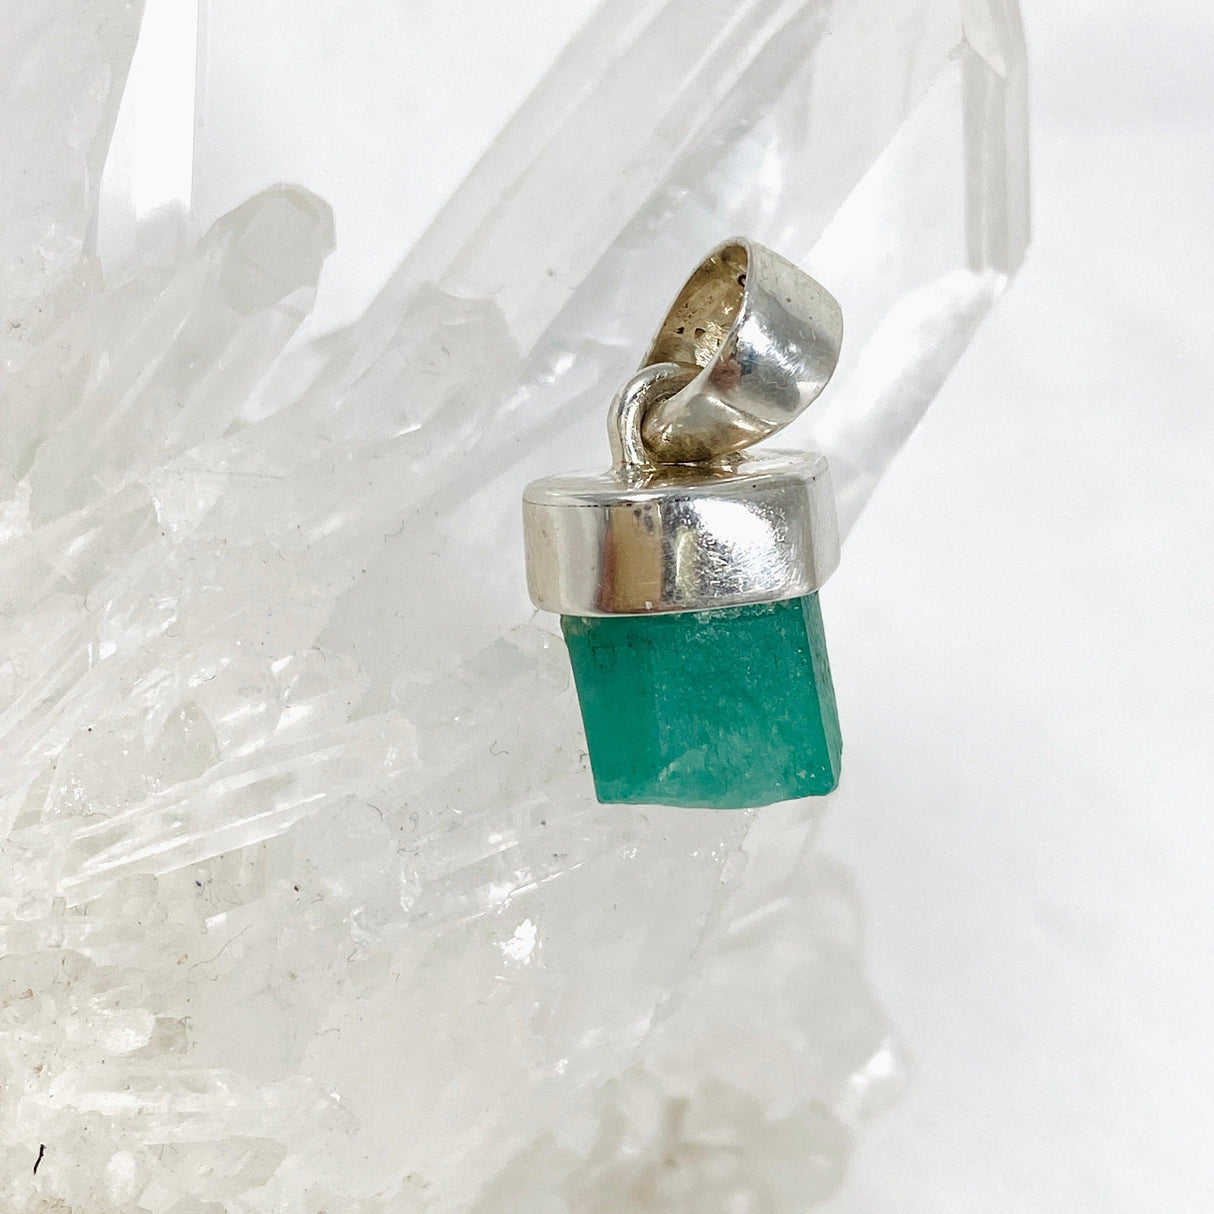 Emerald Raw Petite Pendant PPGJ521 - Nature's Magick